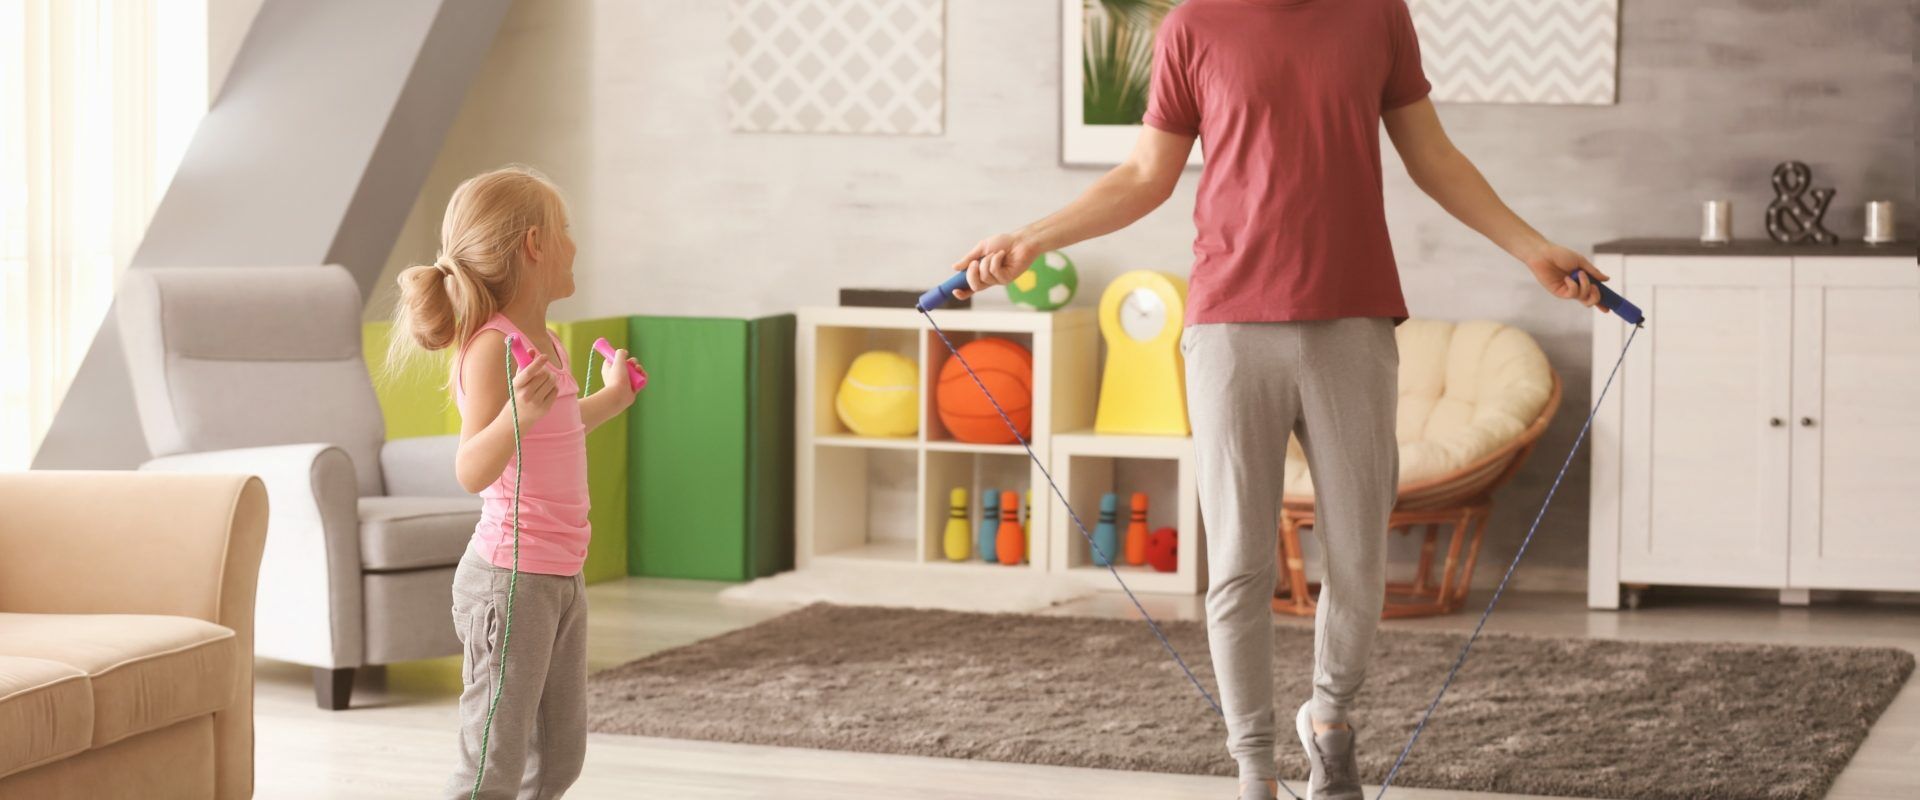 Jak ćwiczyć z dziećmi? Ojciec z córką trenują ze skakanką w domu.